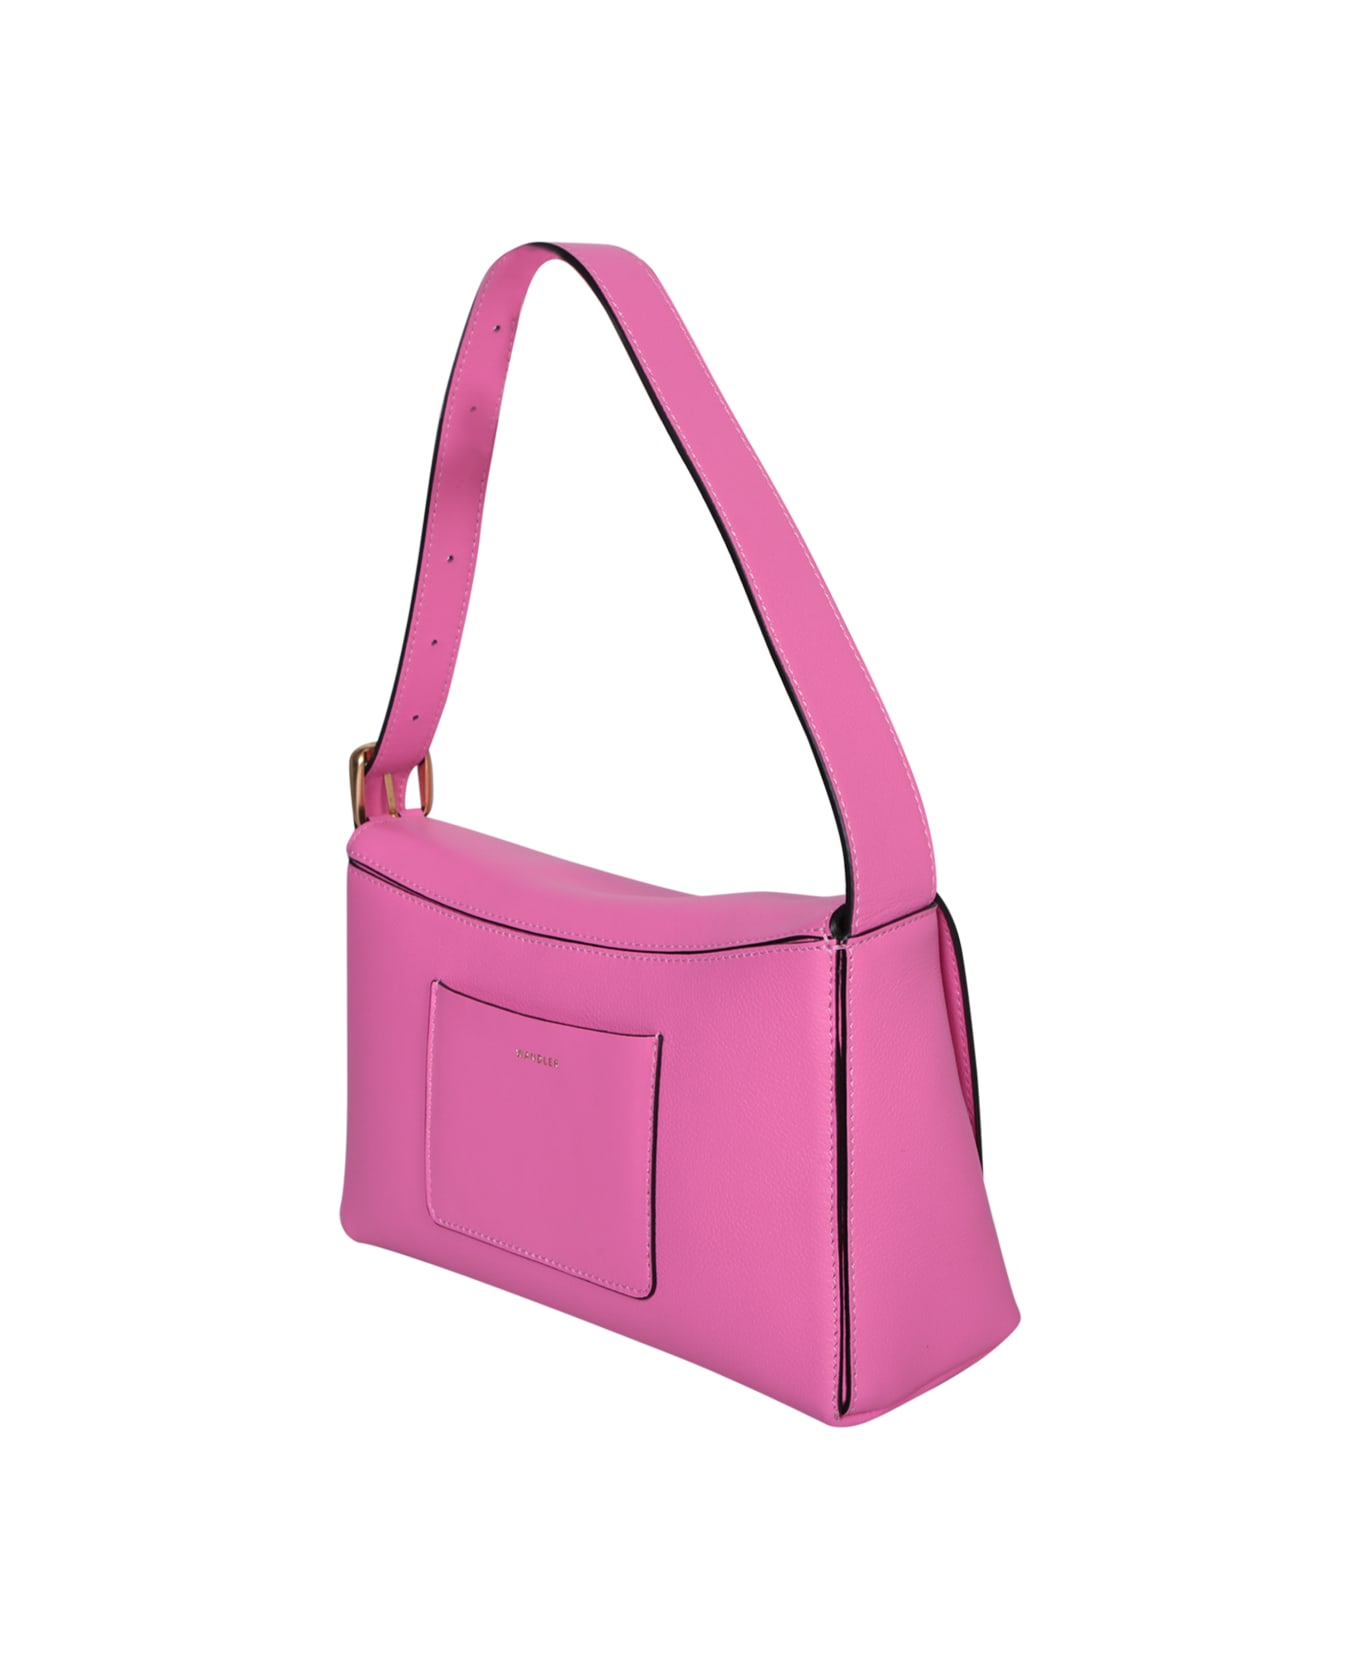 Wandler Orscar Baguette Pink Bag - Pink トートバッグ